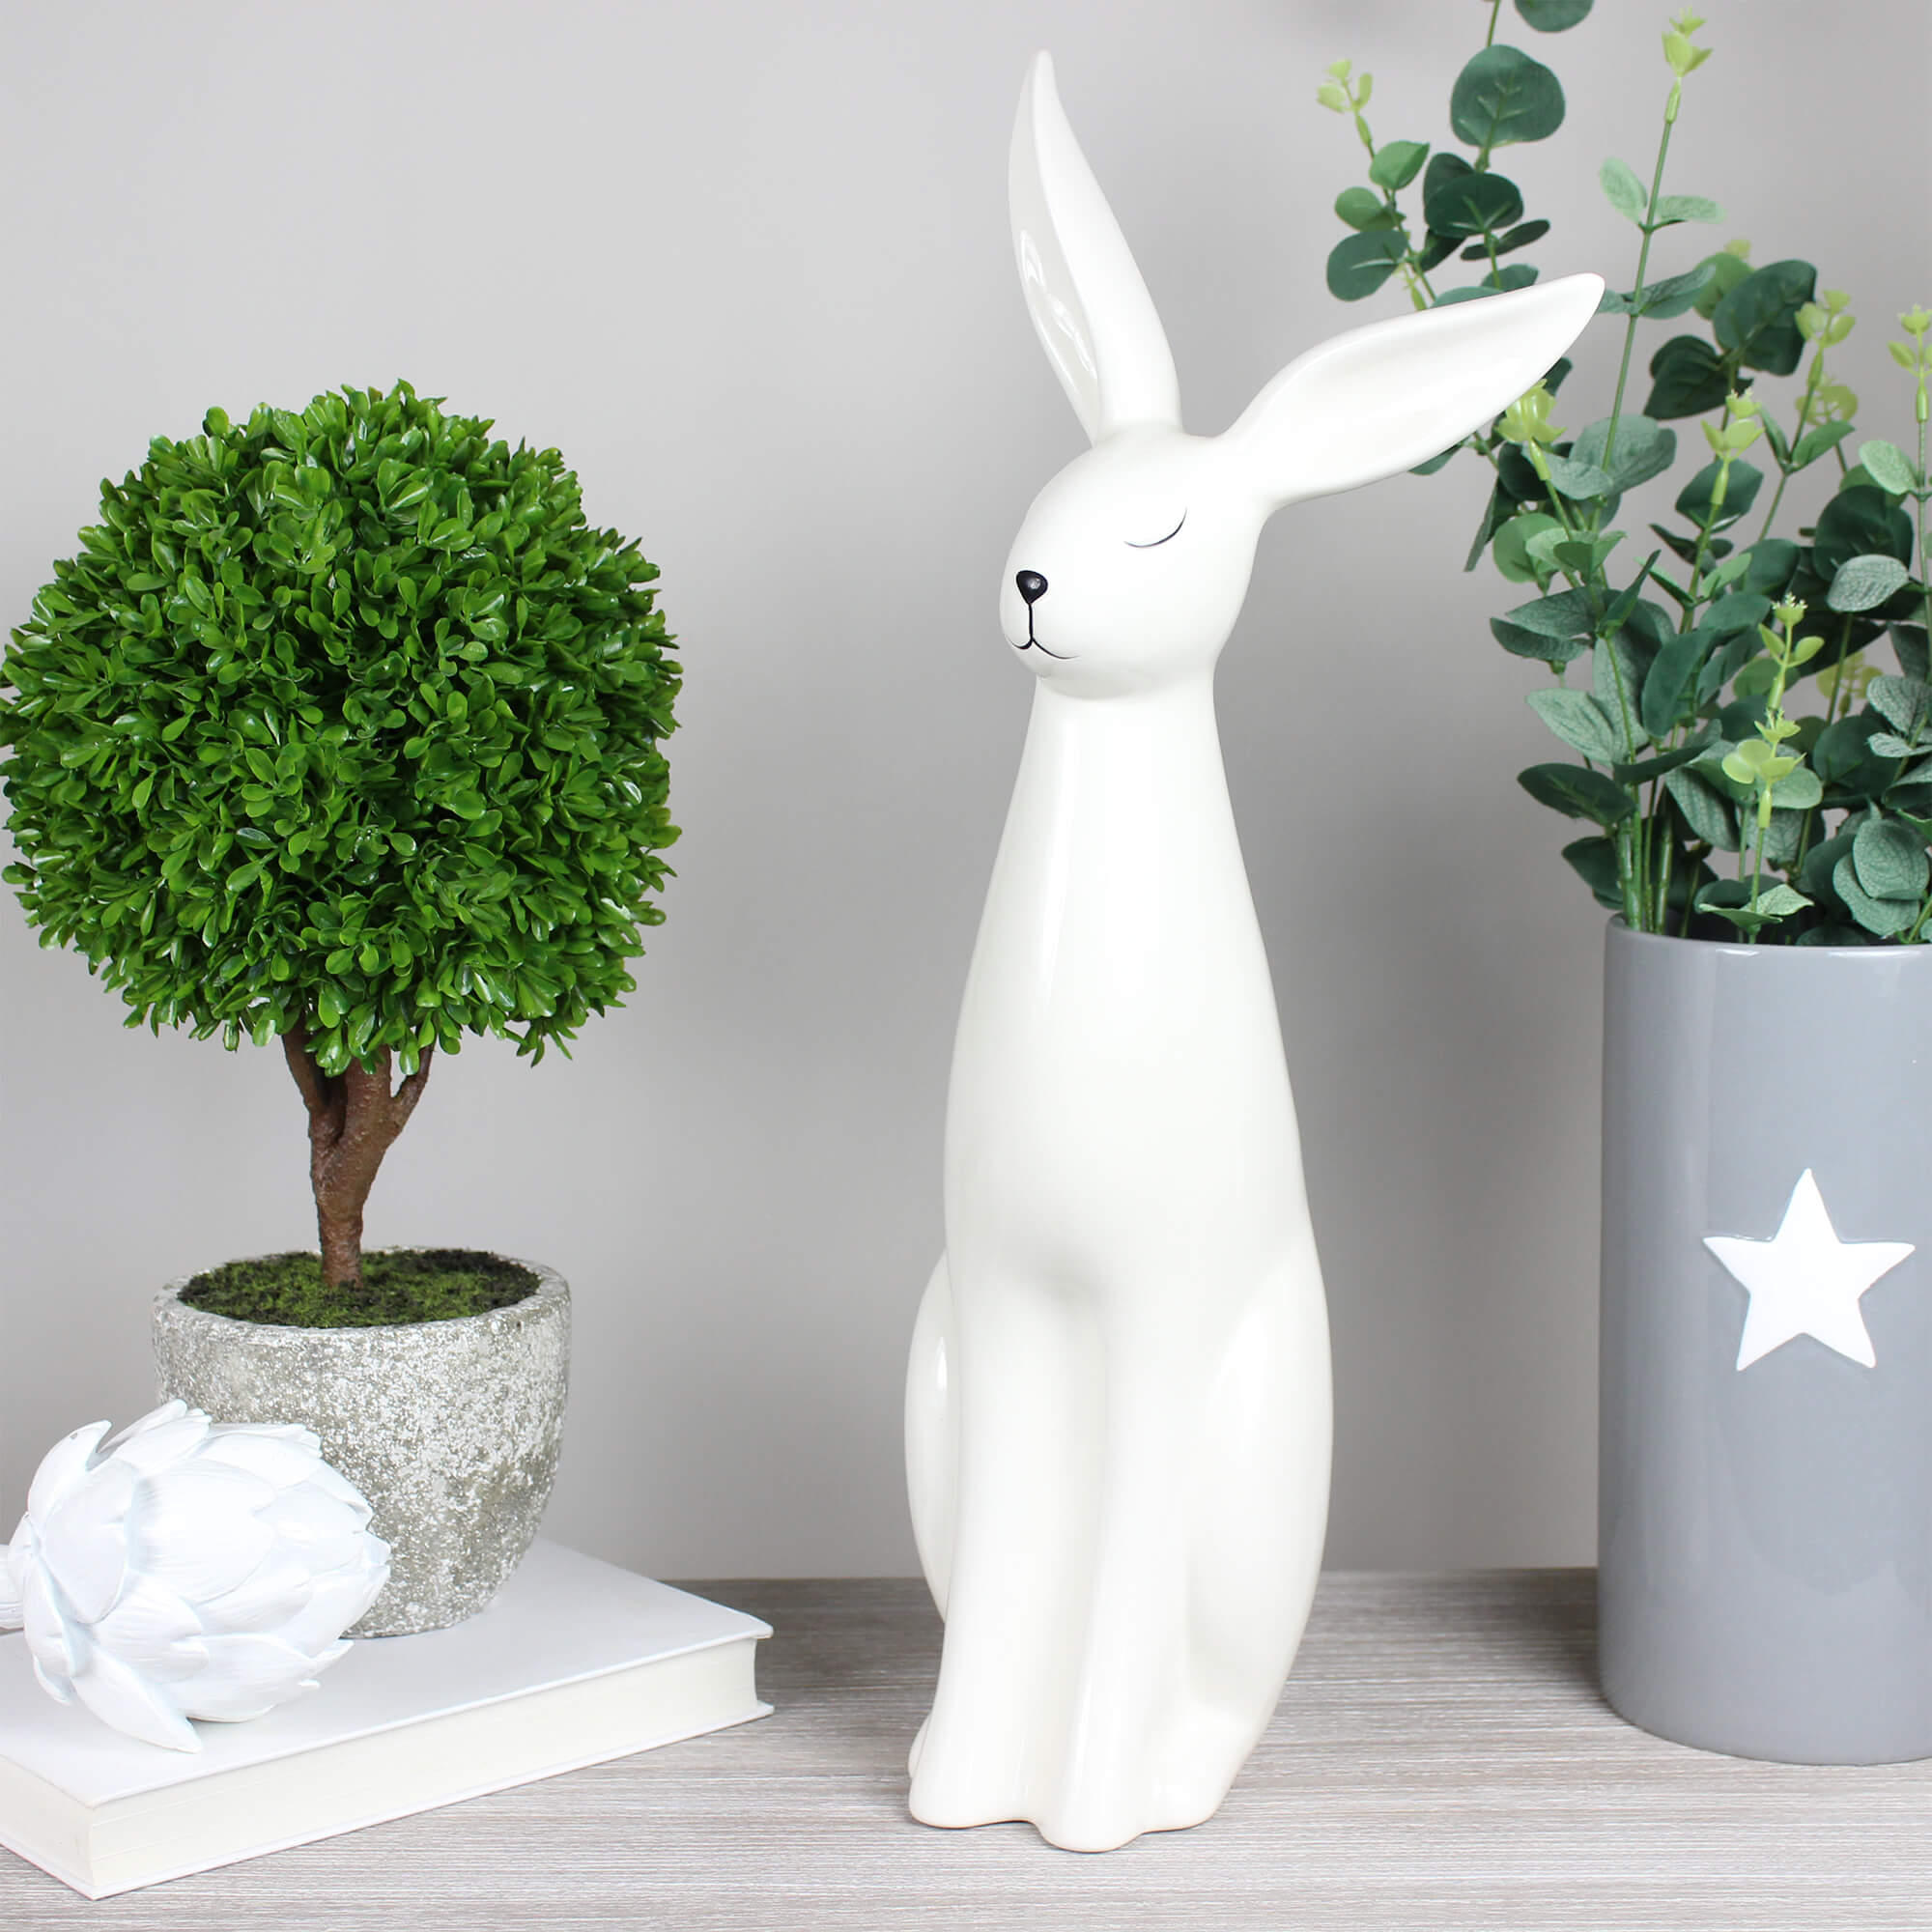 Ralphie White Ceramic Rabbit